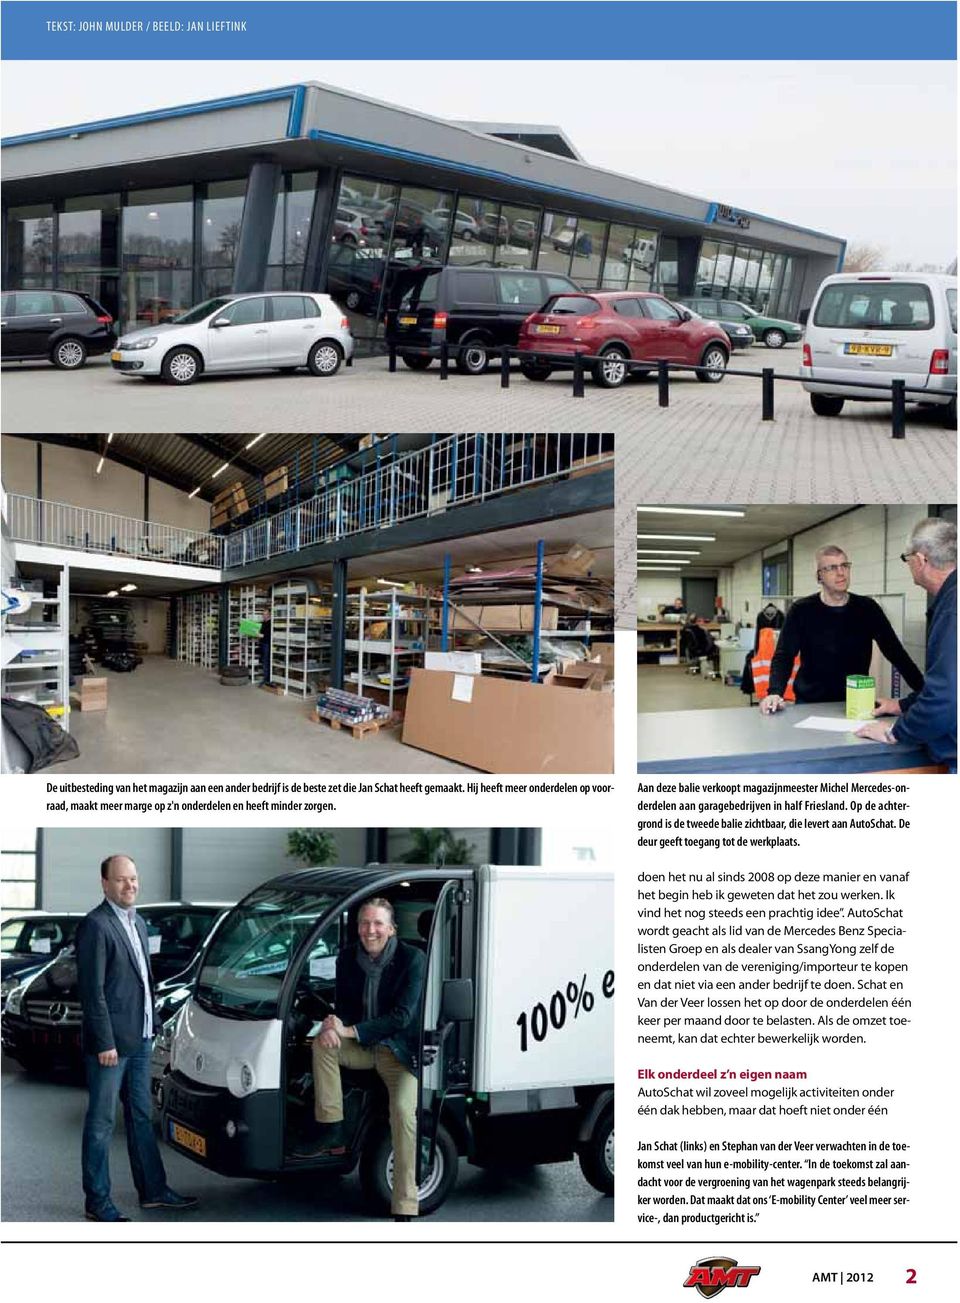 Aan deze balie verkoopt magazijnmeester Michel Mercedes-onderdelen aan garagebedrijven in half Friesland. Op de achtergrond is de tweede balie zichtbaar, die levert aan AutoSchat.